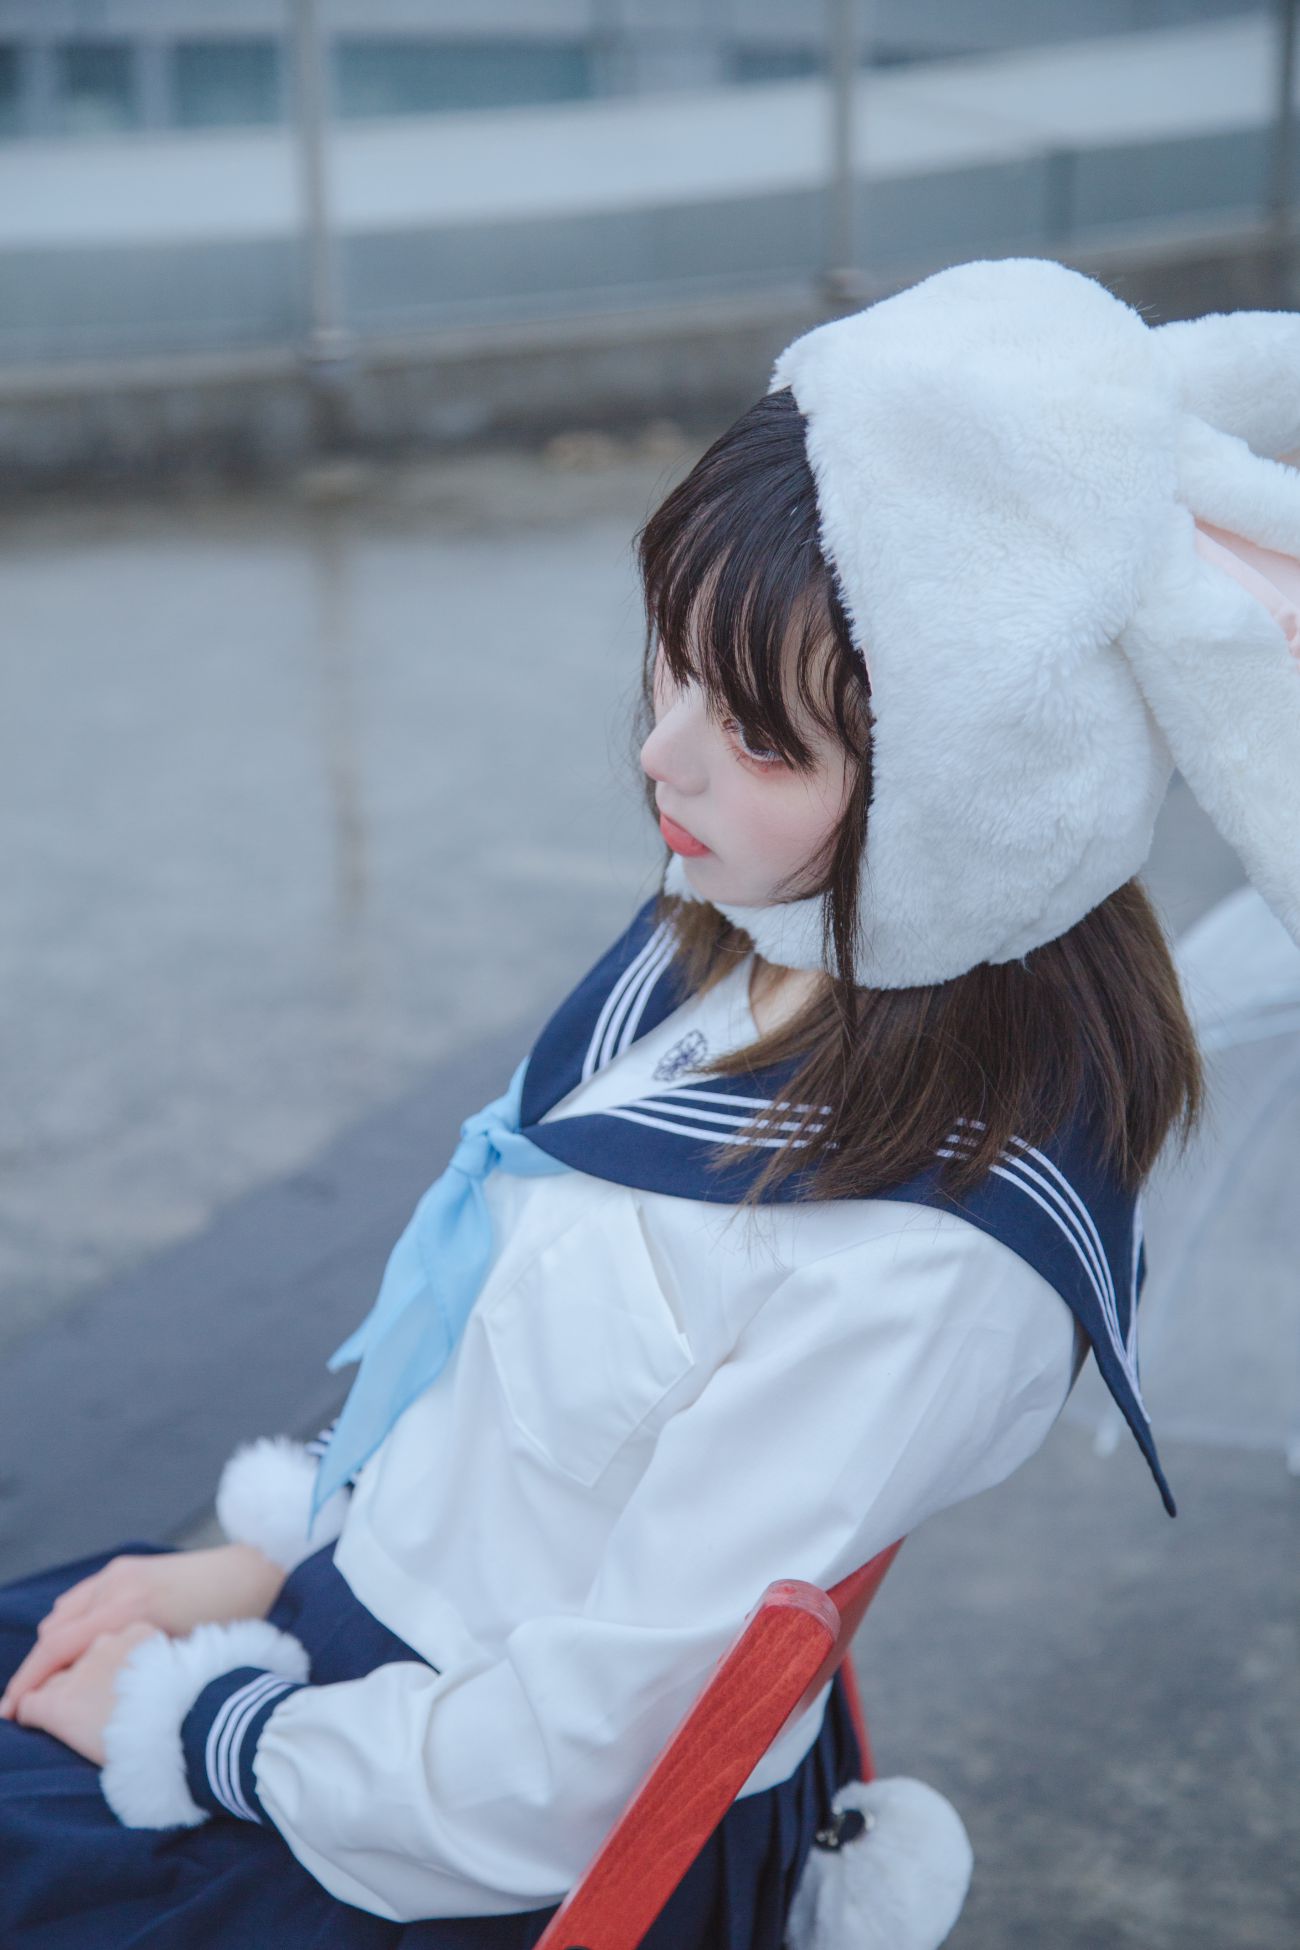 微博美少女Fushii海堂Cosplay性感写真兔兔头 (18)